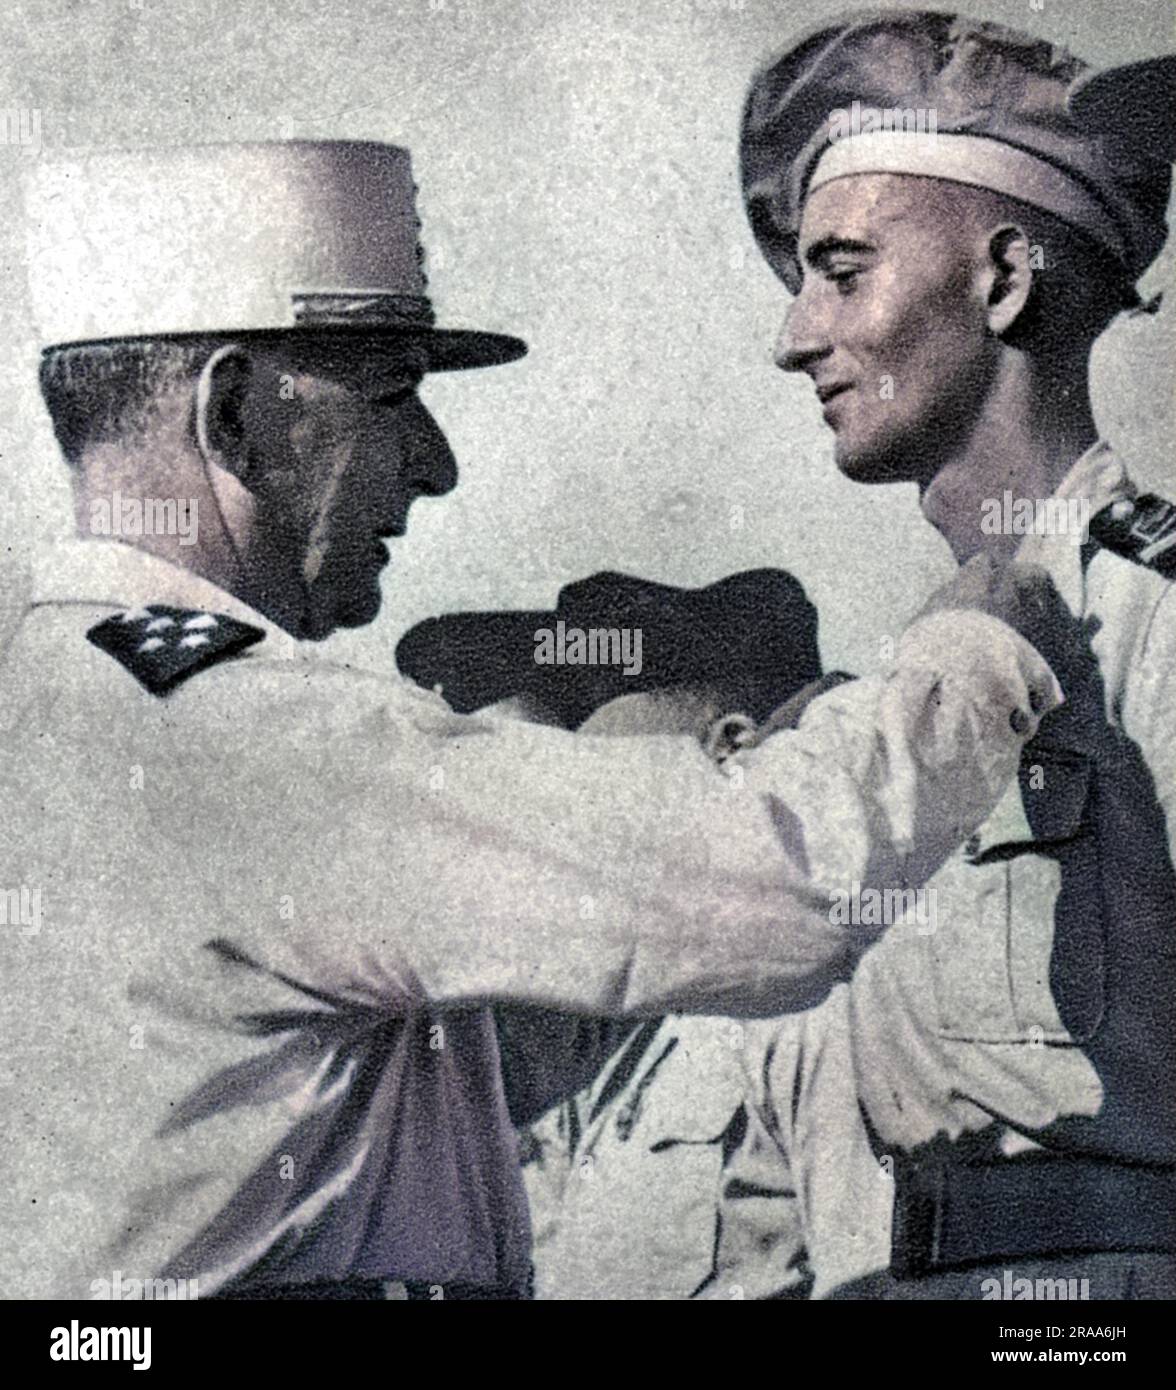 Le général JEAN de LATTRE DE TASSIGNY commandant militaire français, a vu ici épingler une médaille à son fils Bernard en 1951. Date: 1889 - 1952 Banque D'Images